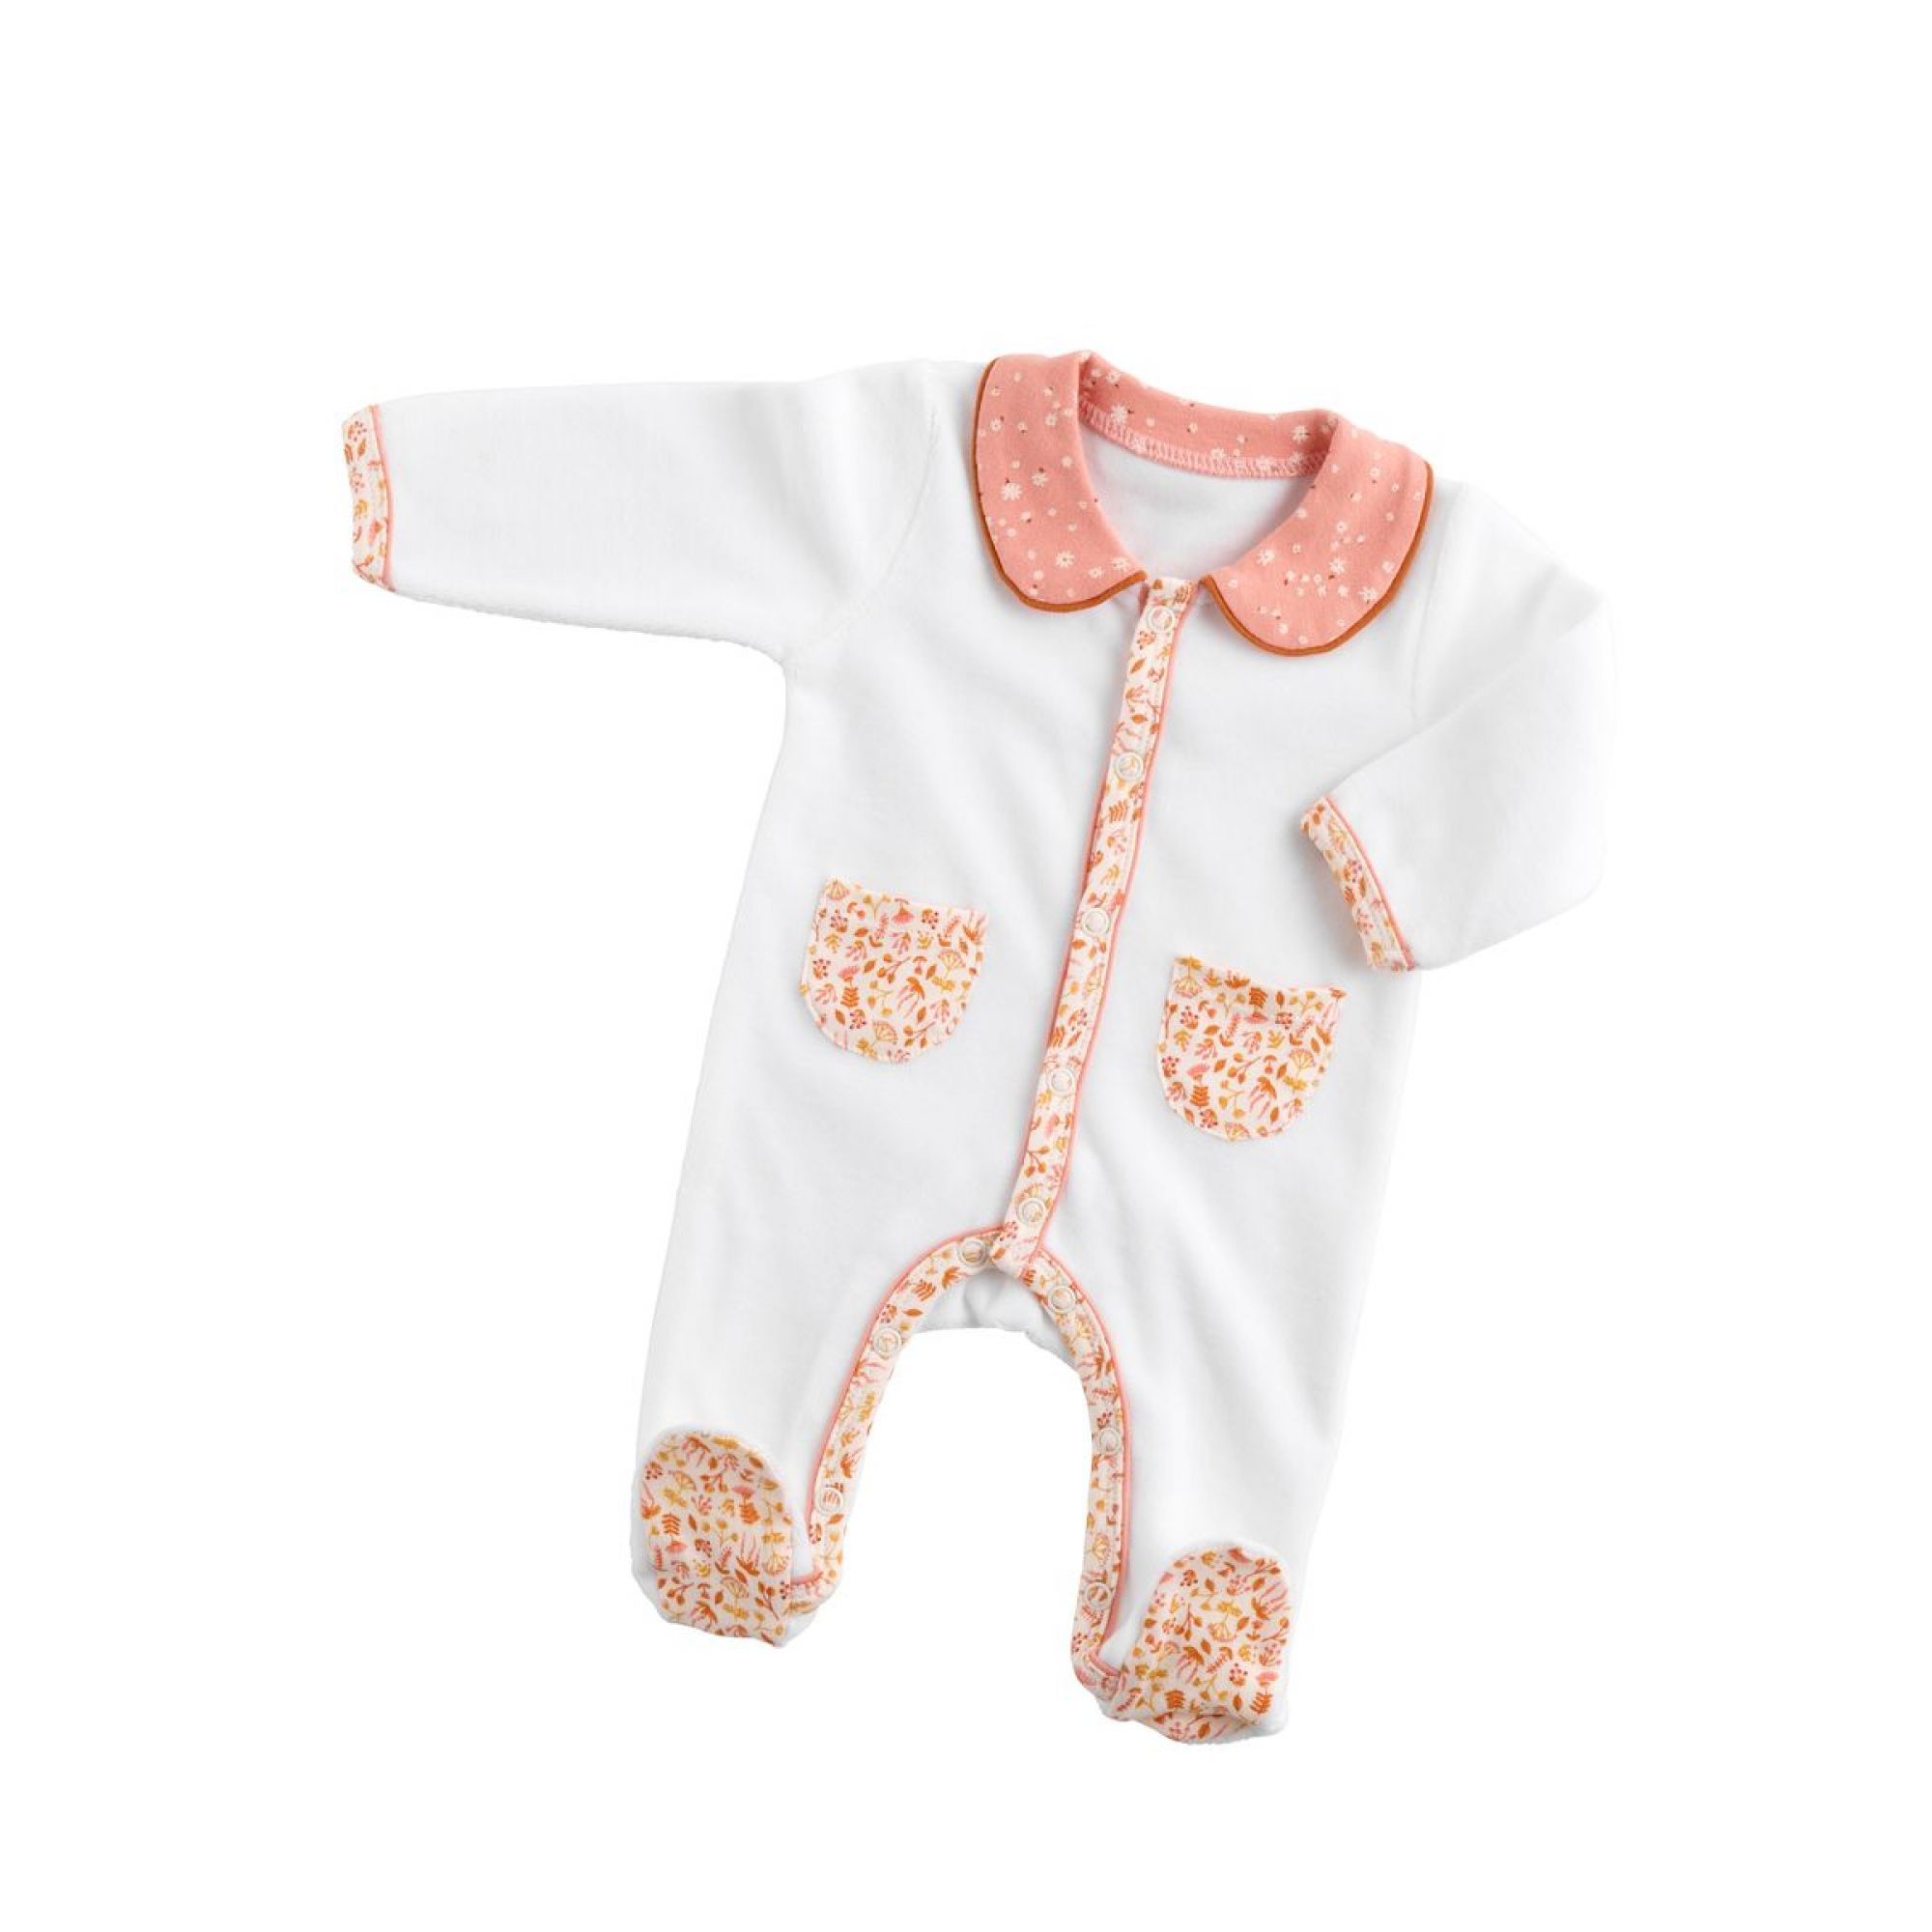 Pyjama bébé blanc ours 1 mois Céleste - Made in Bébé